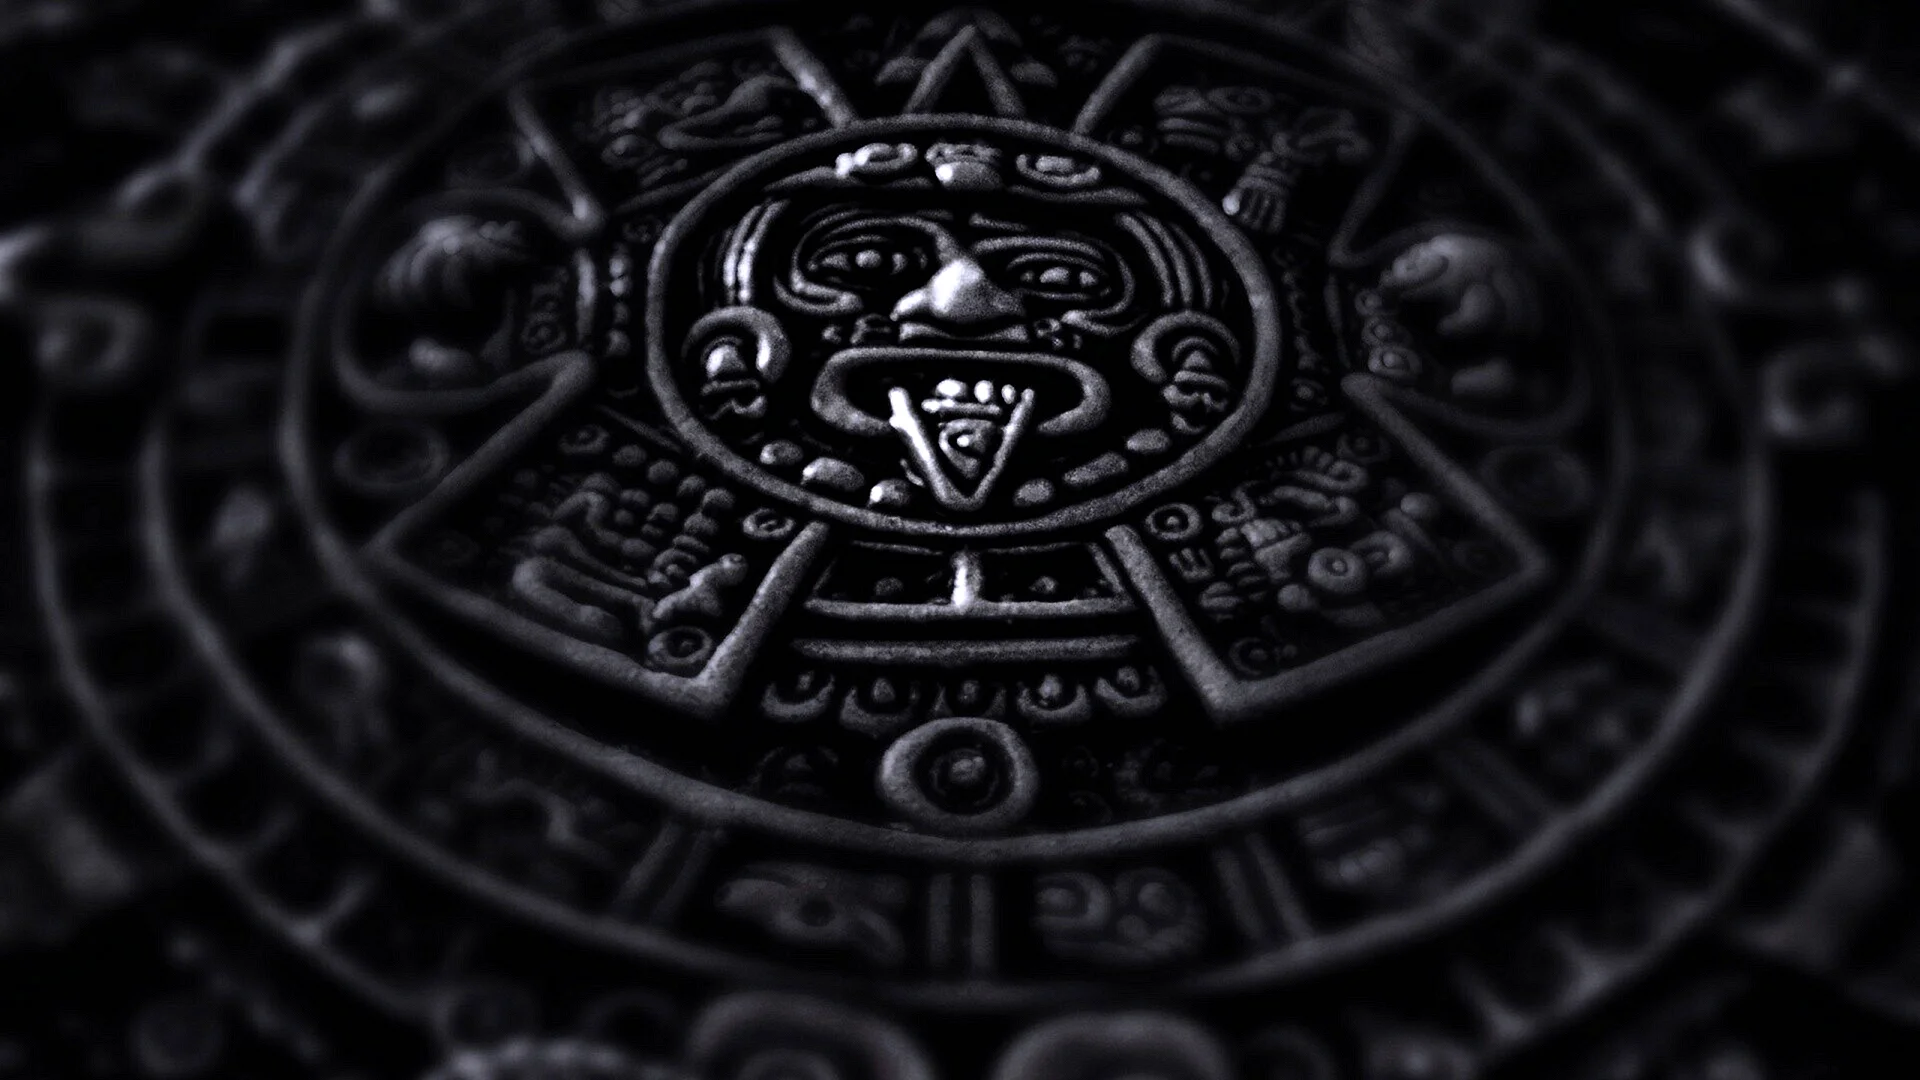 Календарь Майя на черном фоне